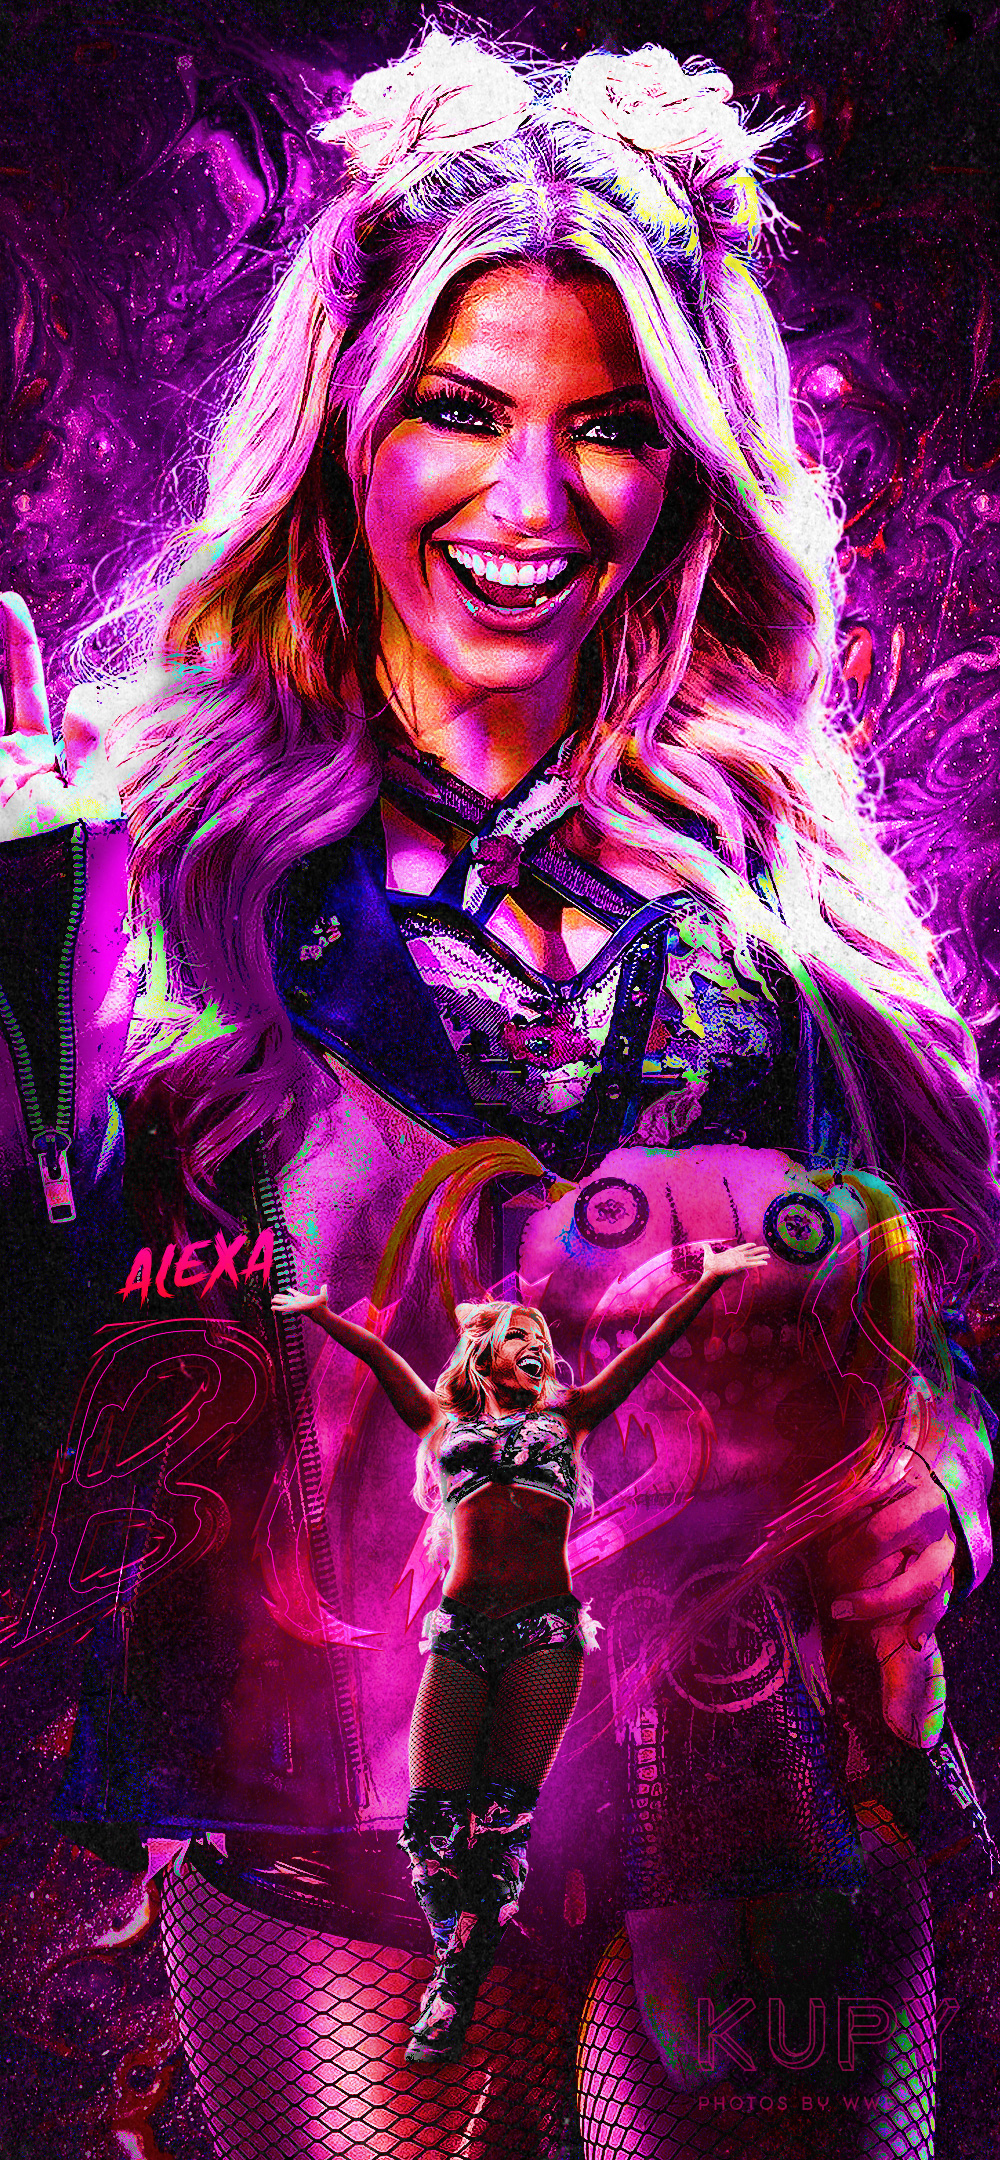 Goddess' Alexa Bliss poster and mobile wallpaper! - Kupy Wrestling  Wallpapers